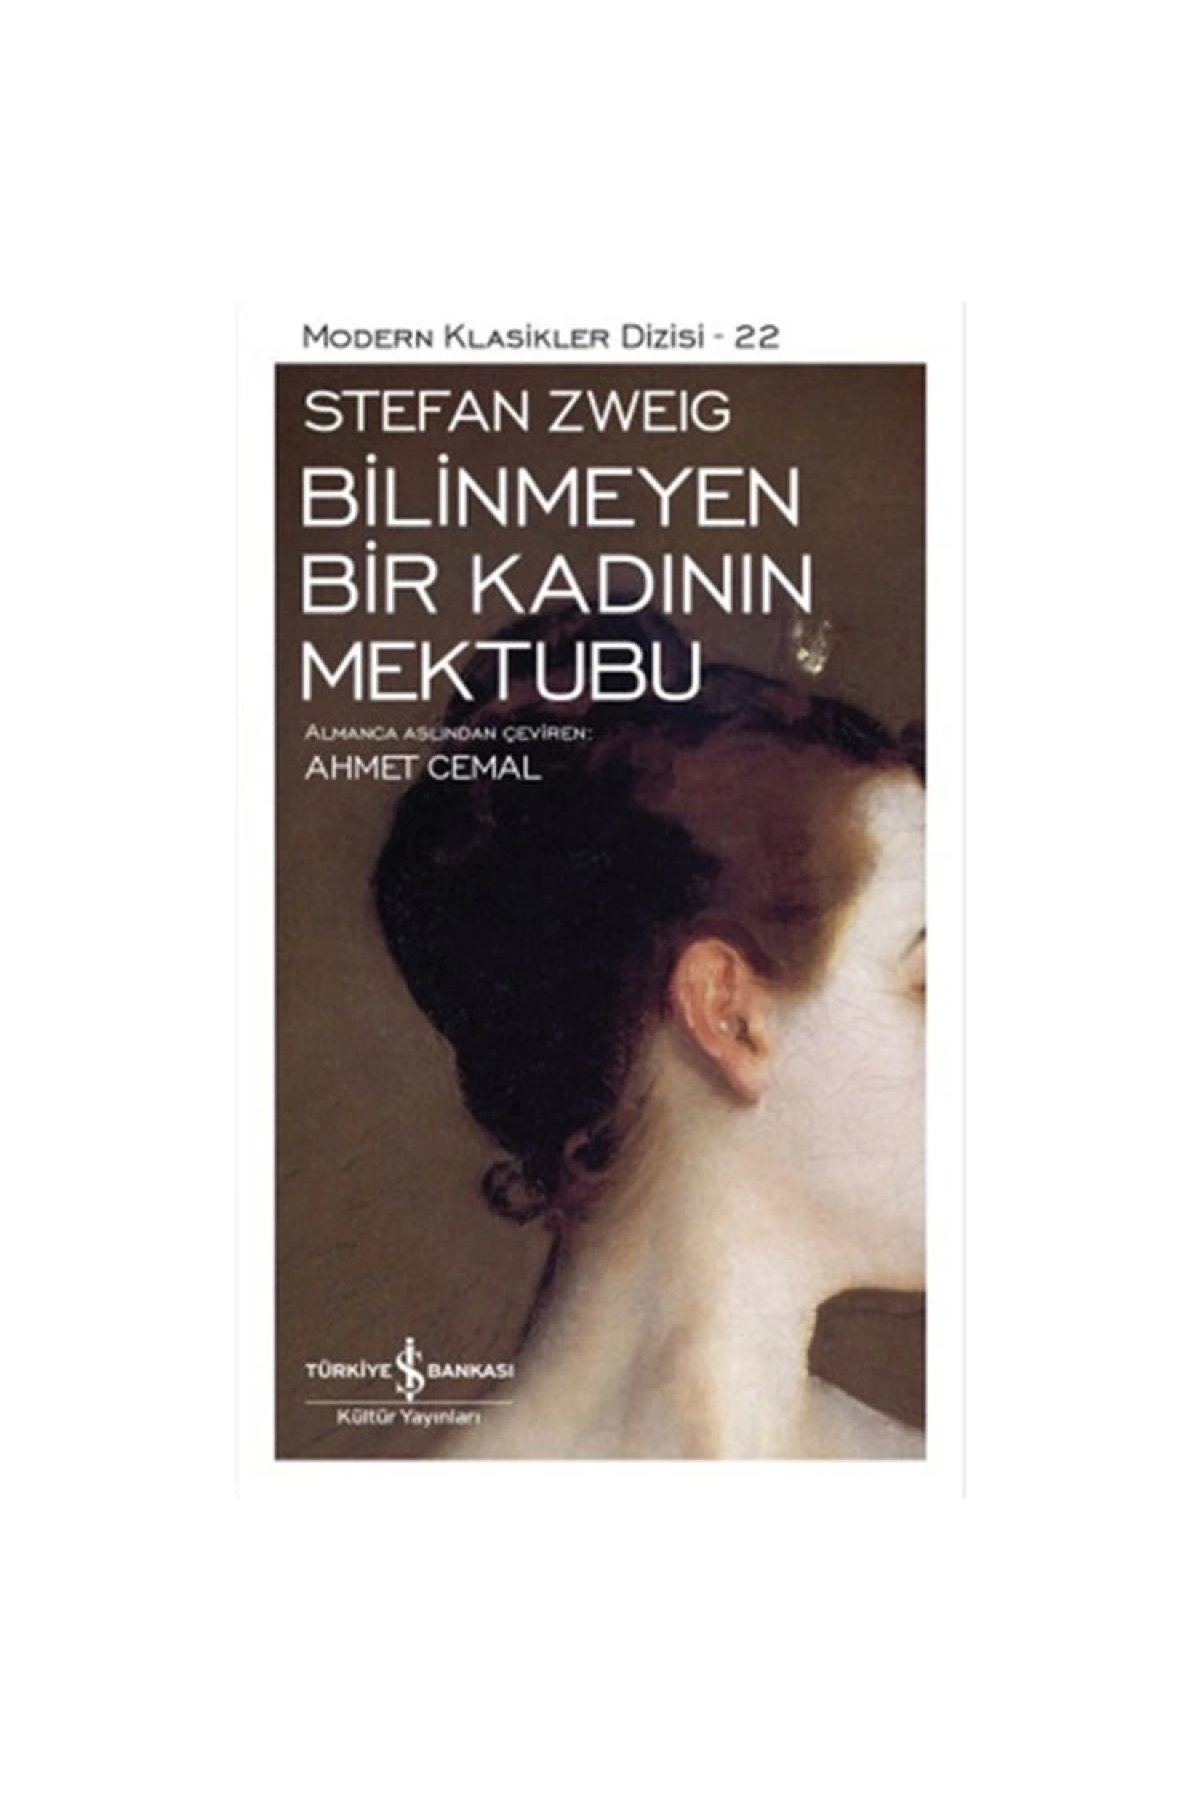 İş Bankası Kültür Yayınları Bilinmeyen Bir Kadının Mektubu (KARTON KAPAK) - Stefan Zweig